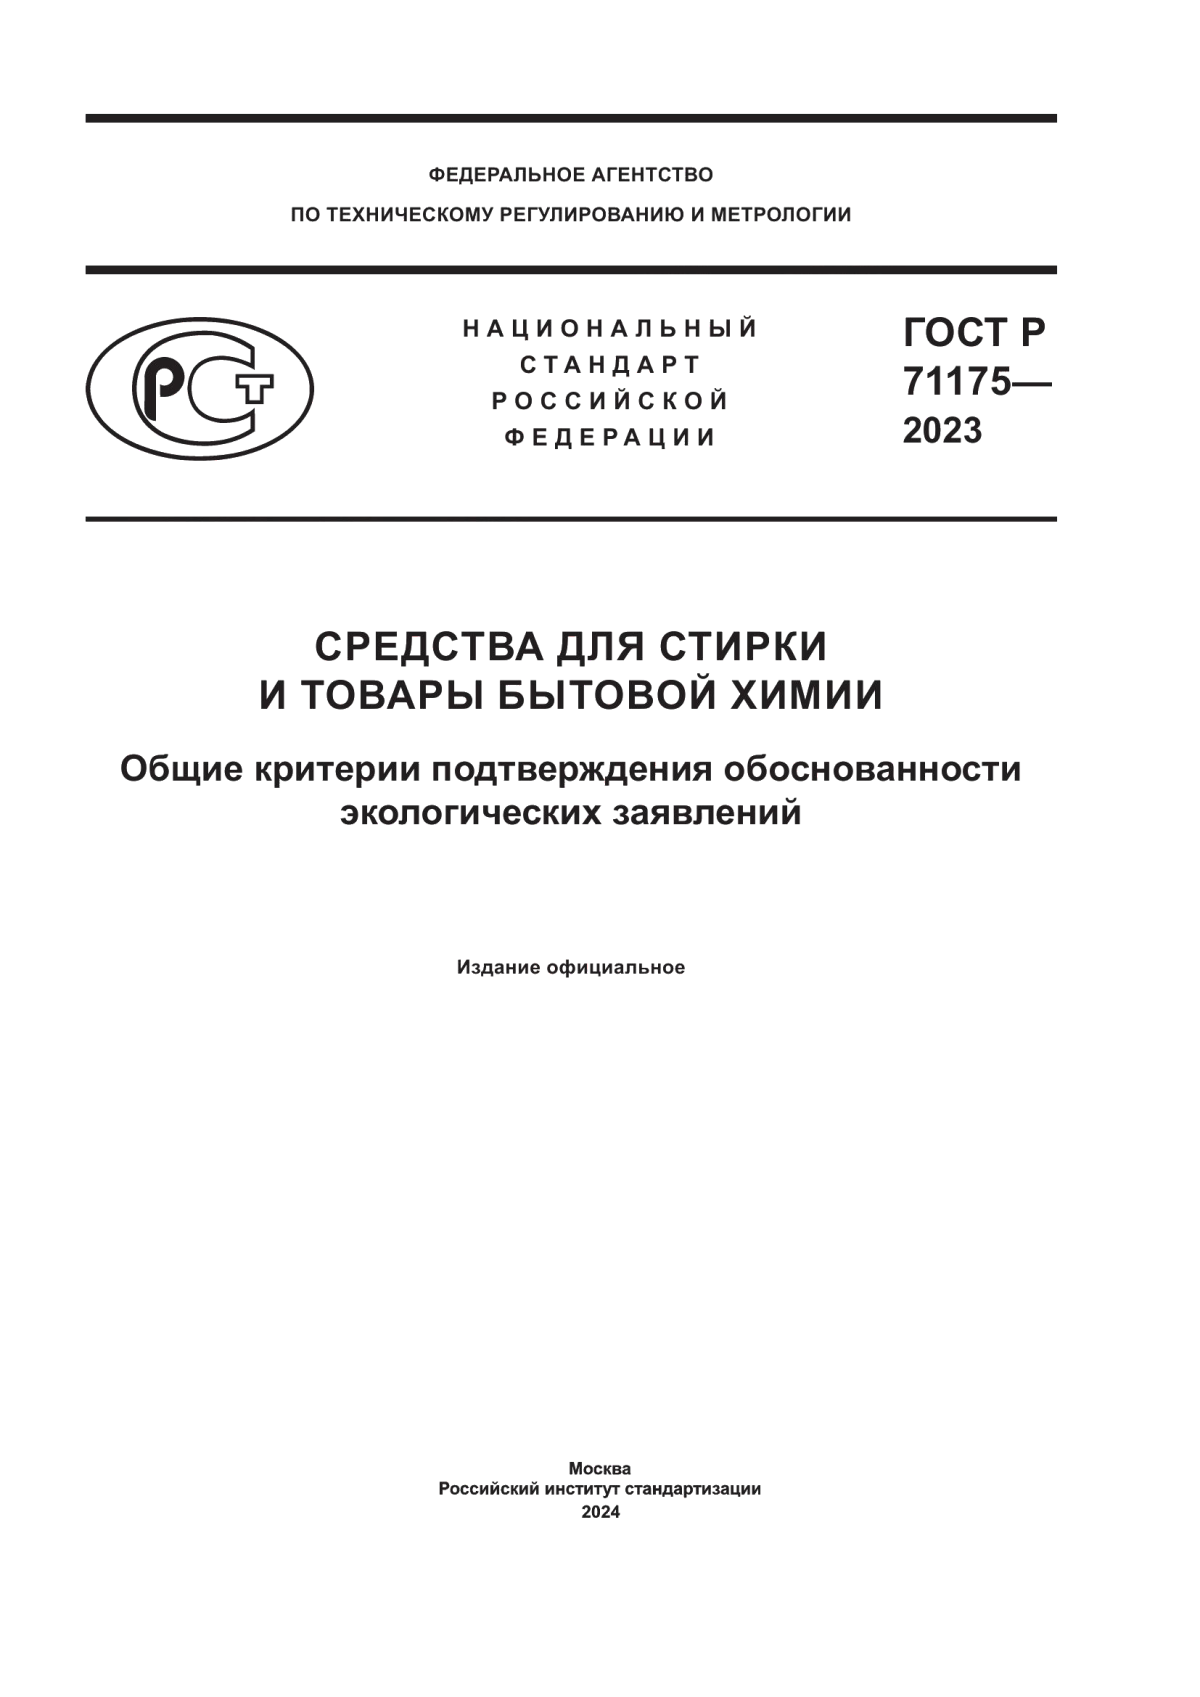 ГОСТ Р 71175-2023 Средства для стирки и товары бытовой химии. Общие критерии подтверждения обоснованности экологических заявлений